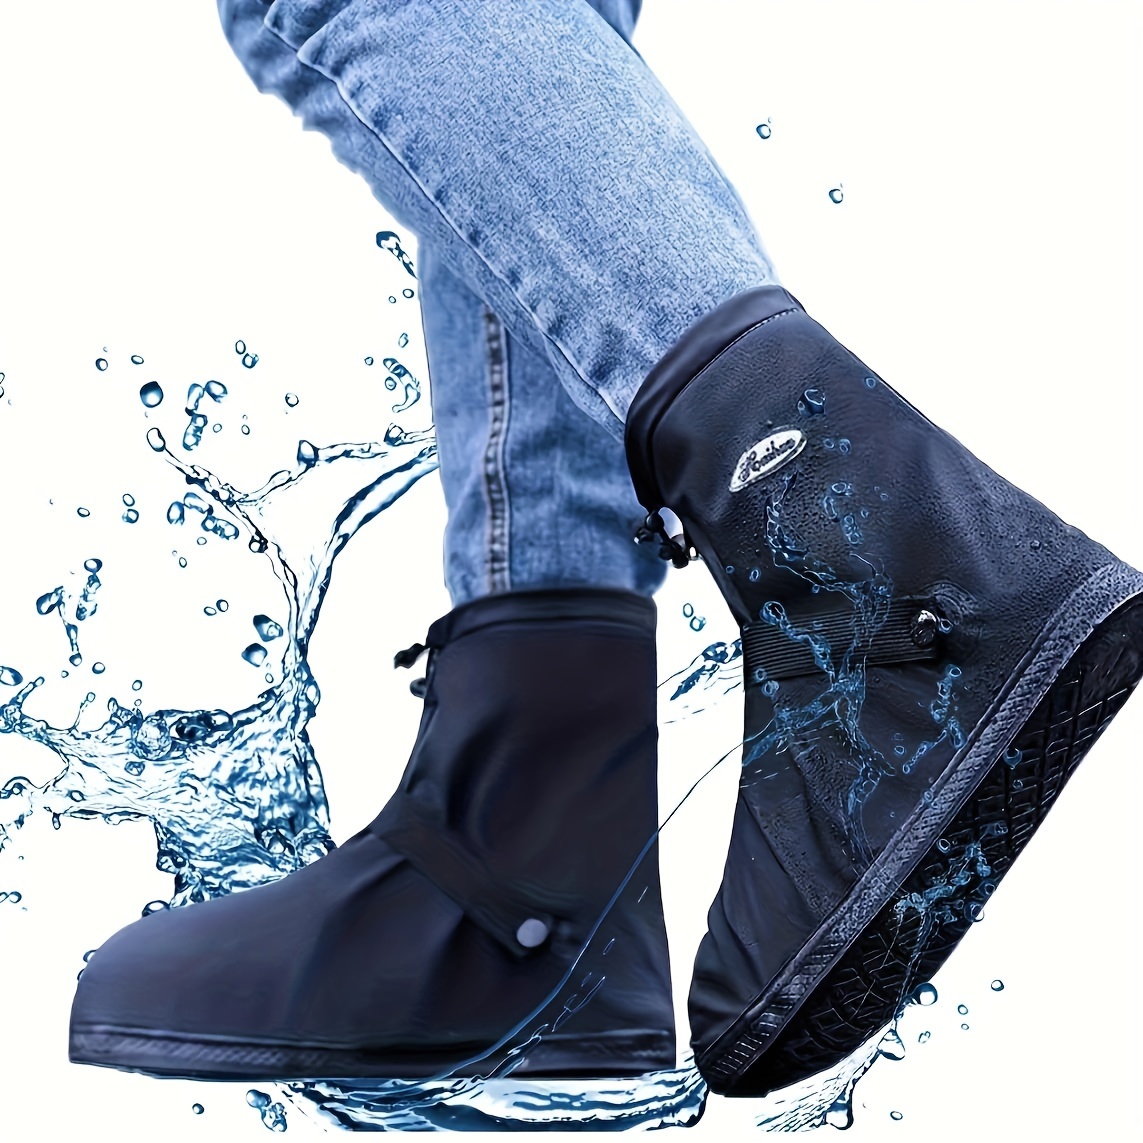 Couvre-chaussures antidérapant imperméable en PVC intégré à la mode avec  semelles épaissies Taille: 36-37 (bleu)